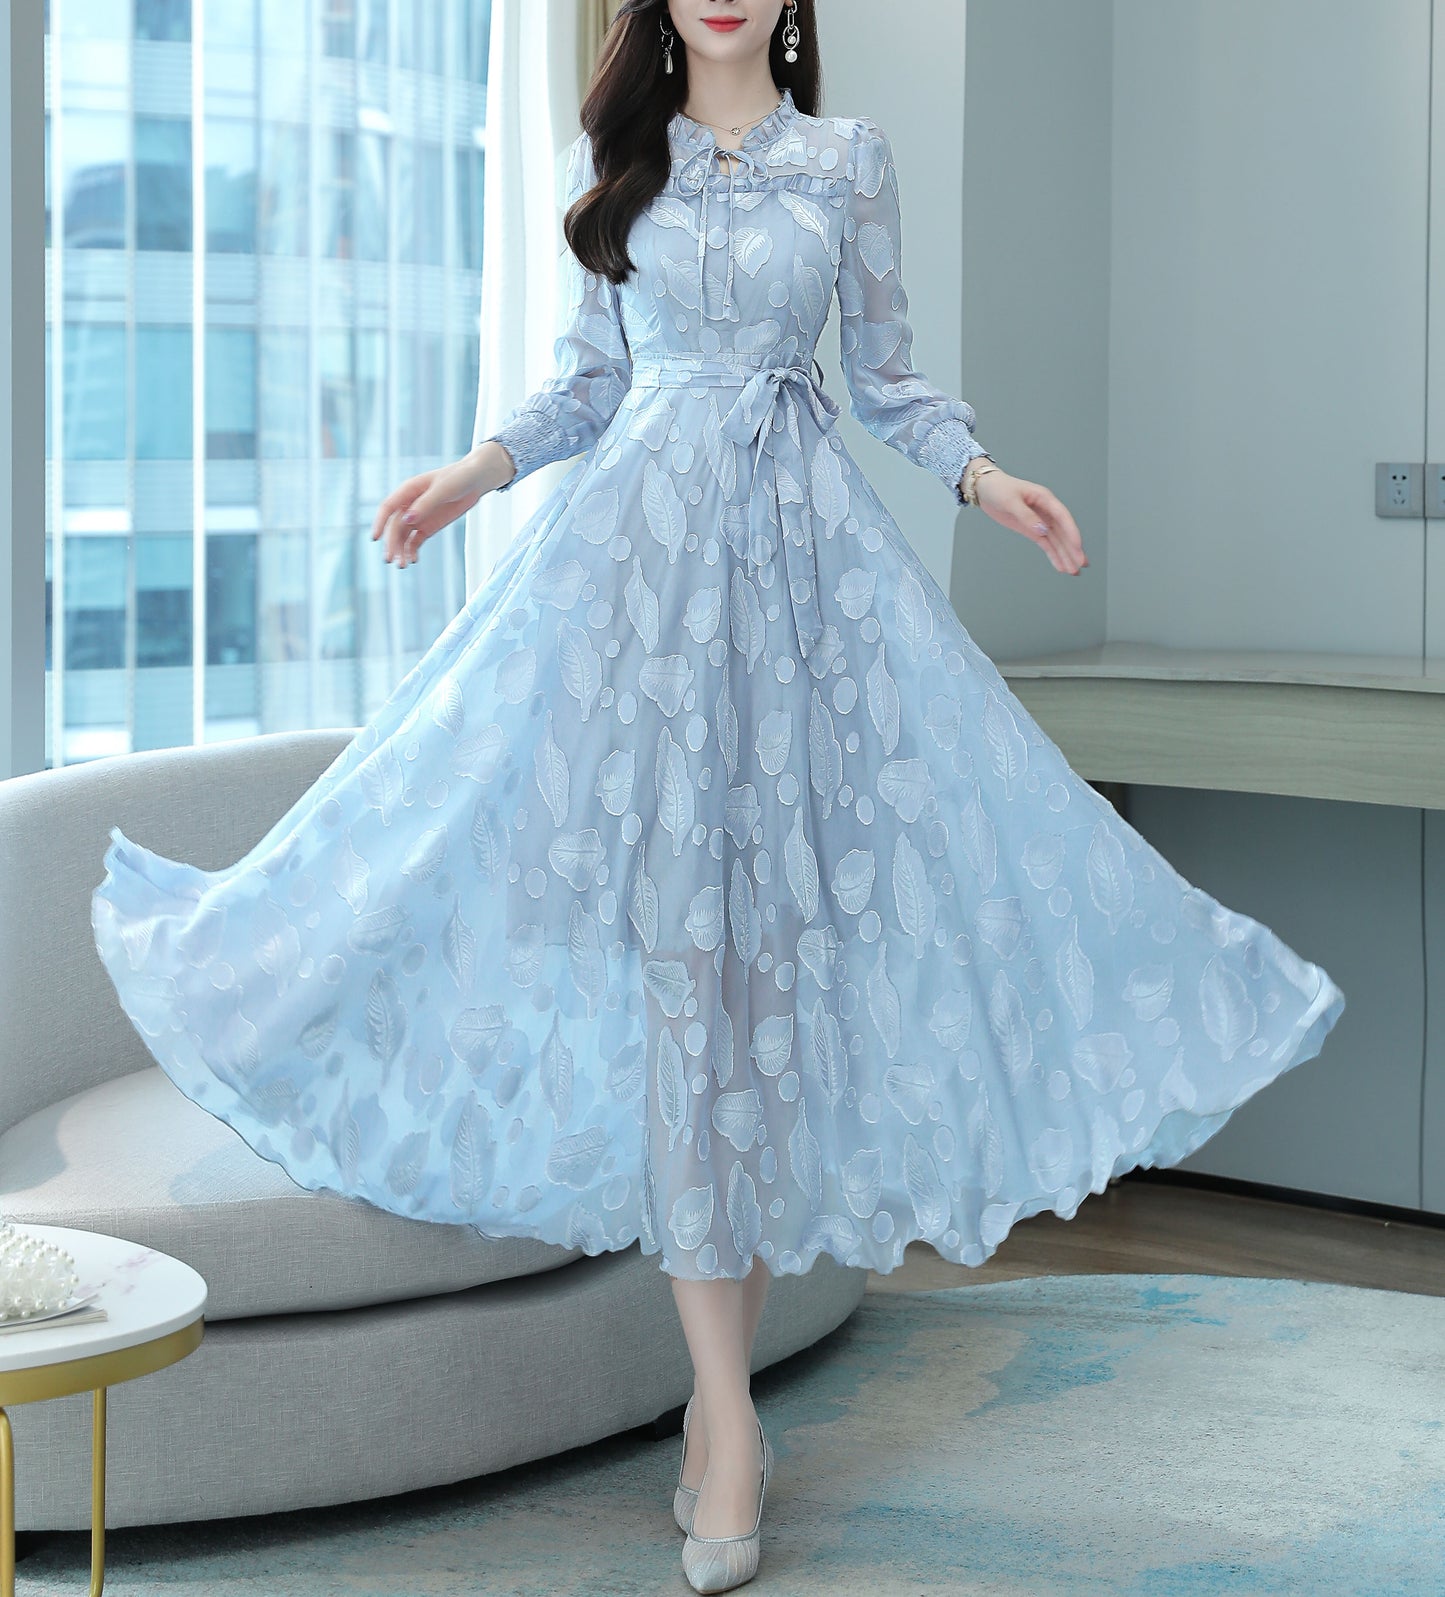 Classic Dress Floral Pattern Maxi Print Dress